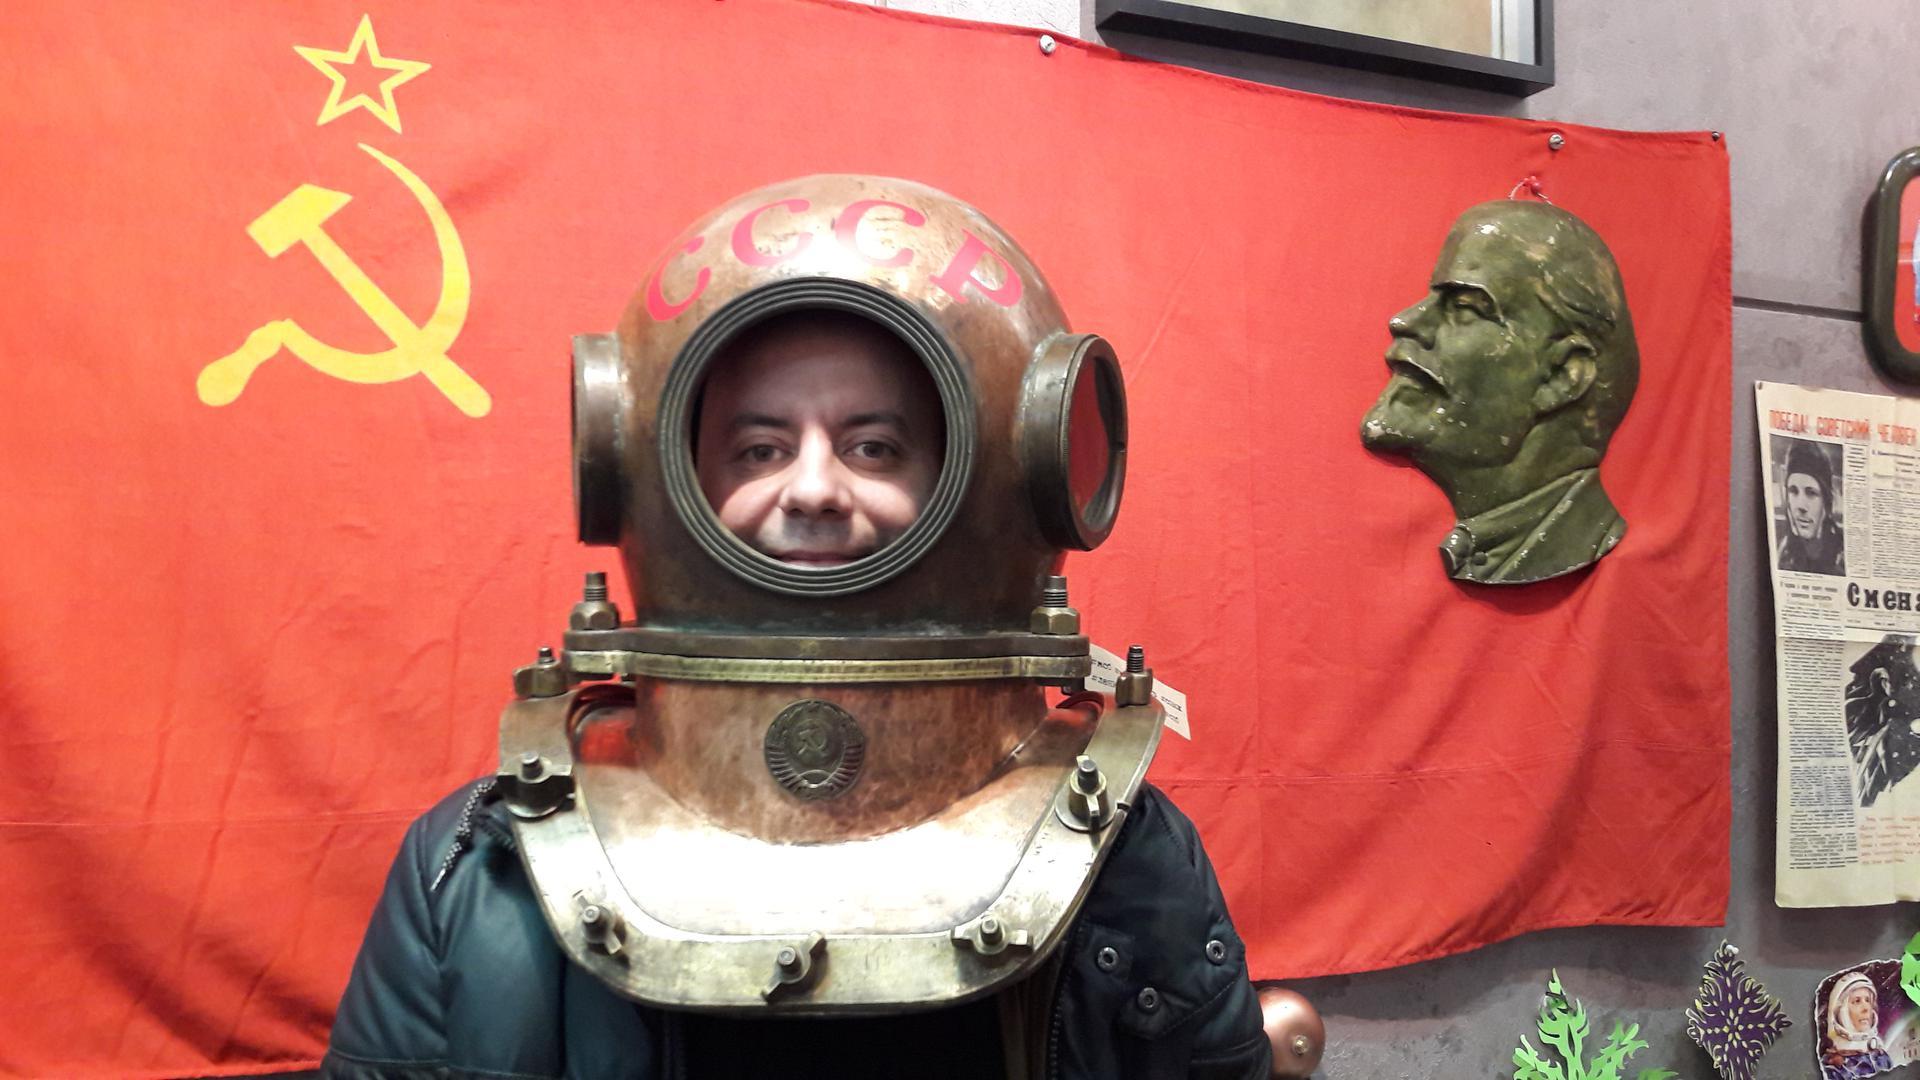 Muzej SSSR-a u St. Peterburgu čuva uspomenu na propali imperij...